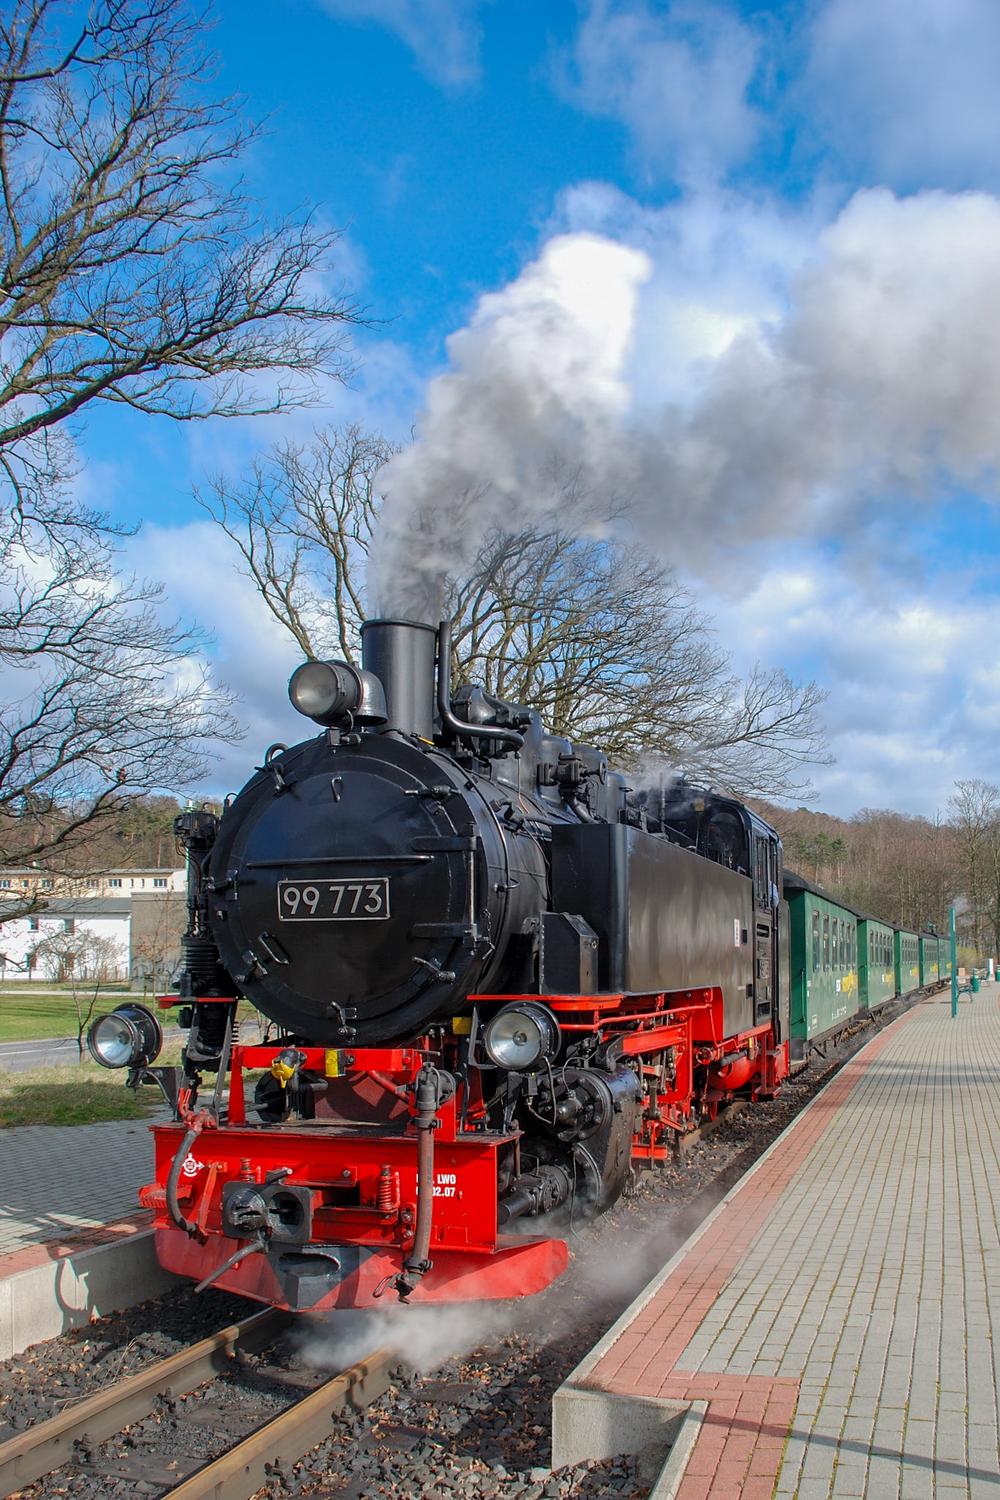 Die SDG-Lok 99 773 aus Oberwiesenthal führte am 18. März 2008 den ersten Zug der RüBB – hier fotografiert in Sellin Ost.